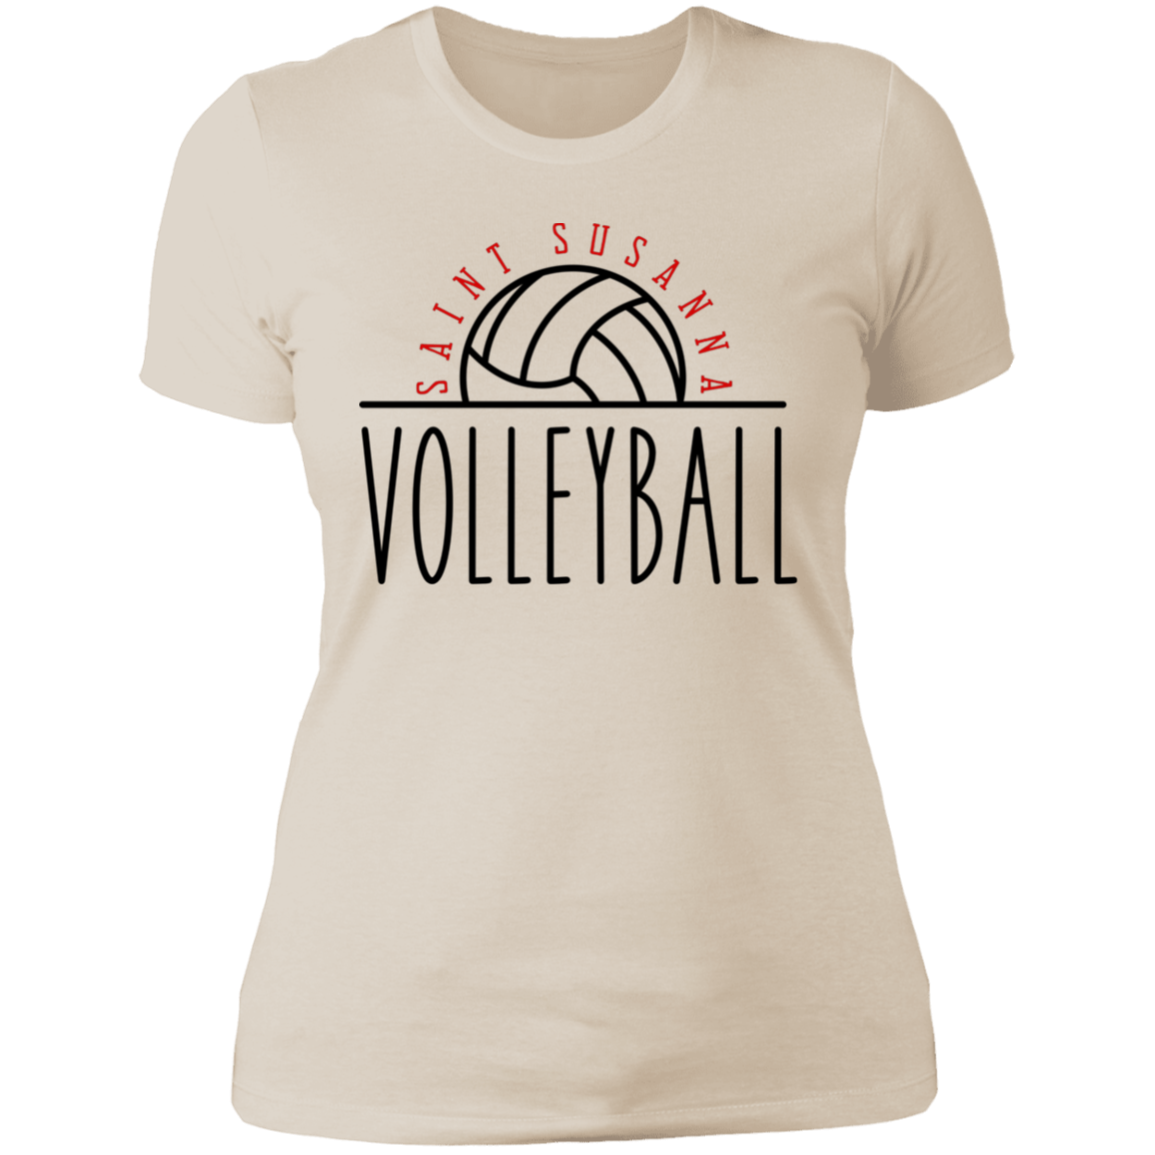 Saint Susanna Volleyball Women's T-Shirt